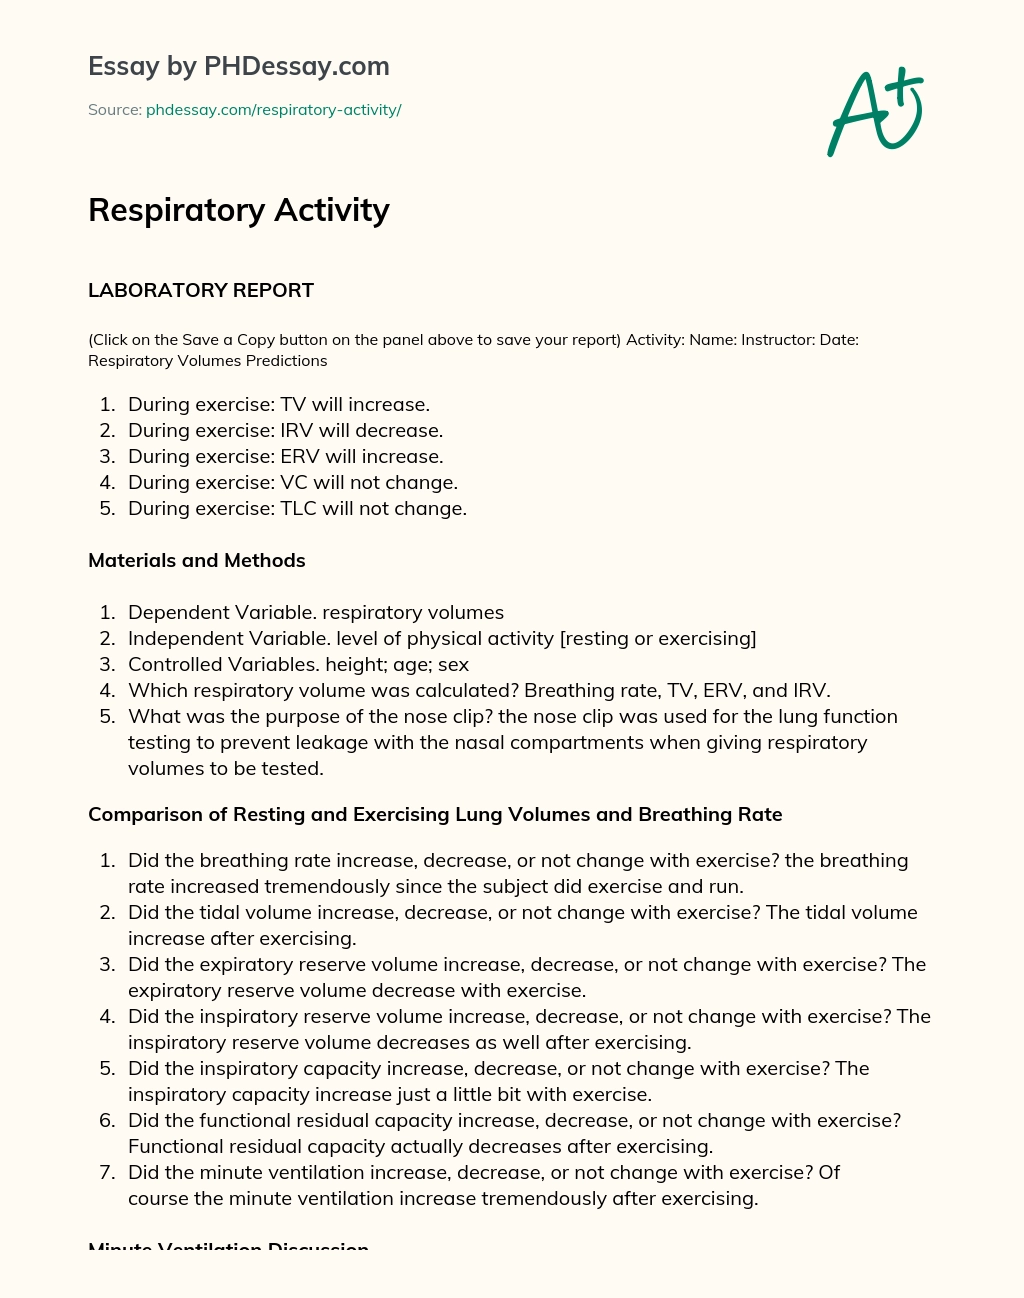 Respiratory Activity essay